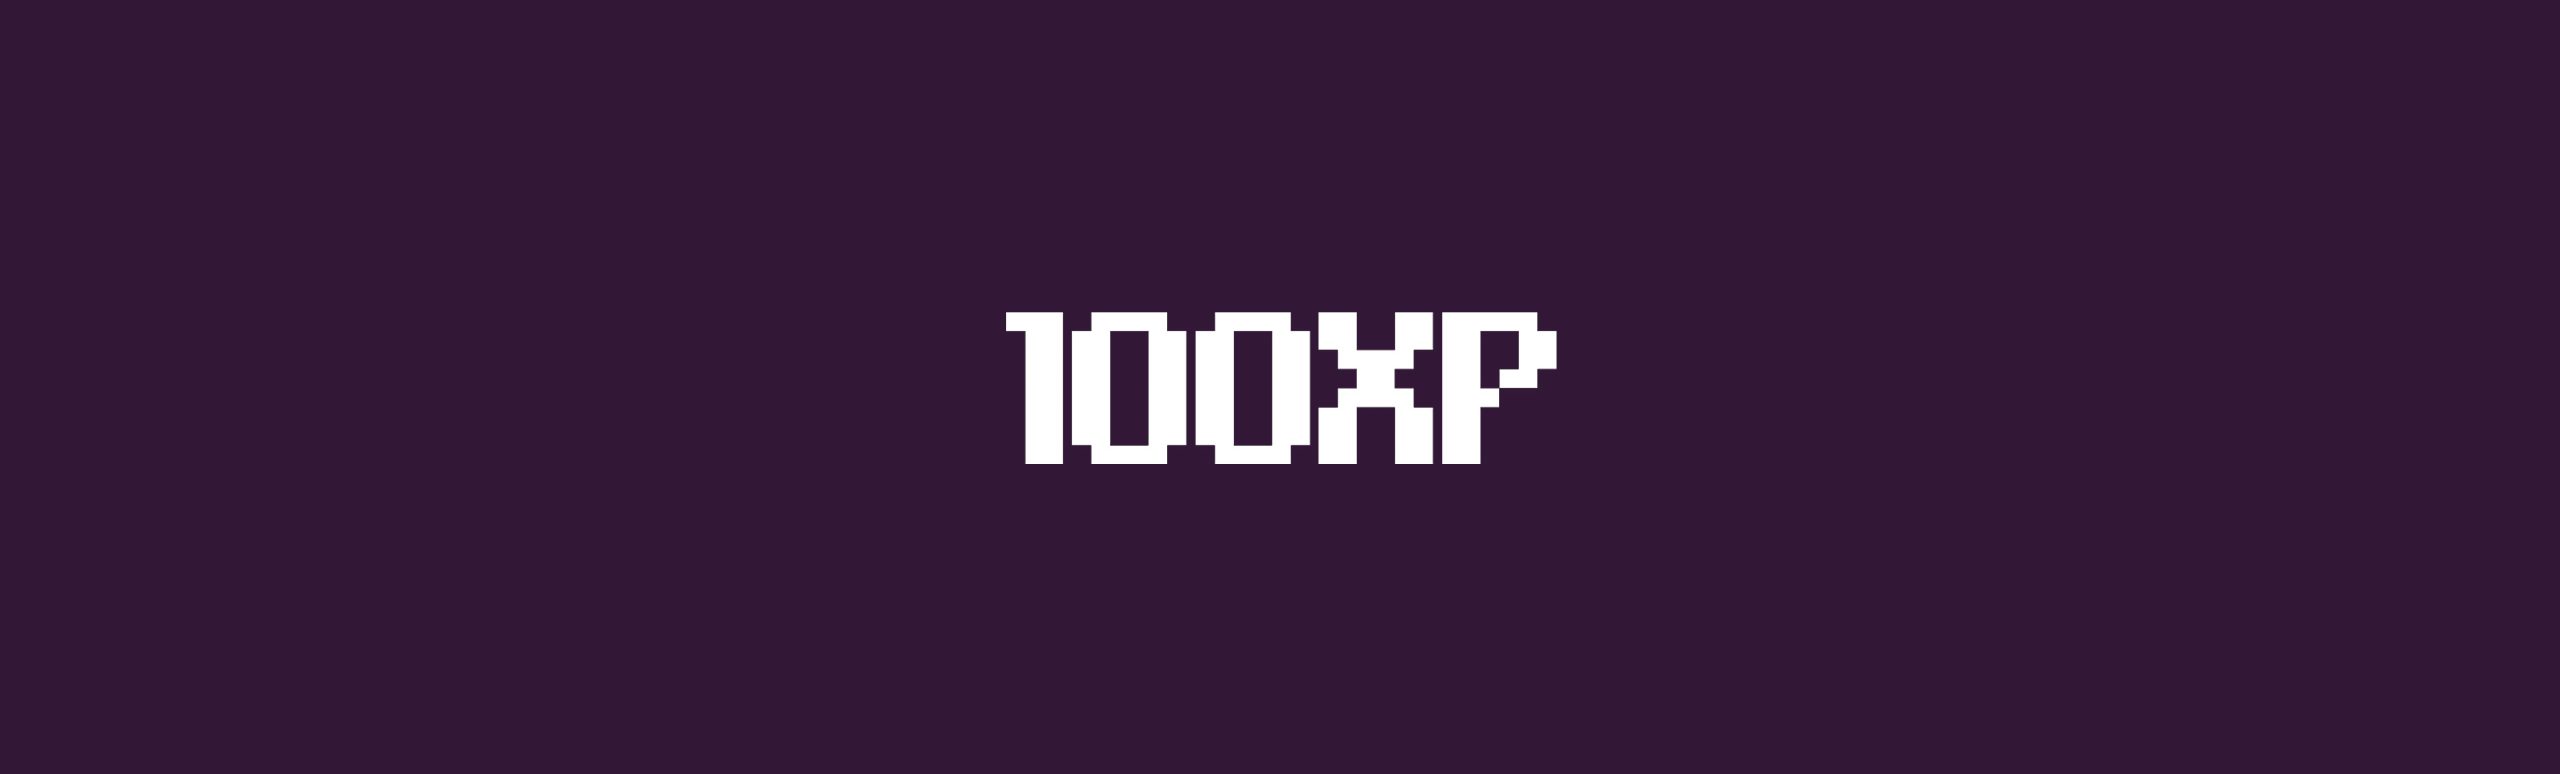 100XP